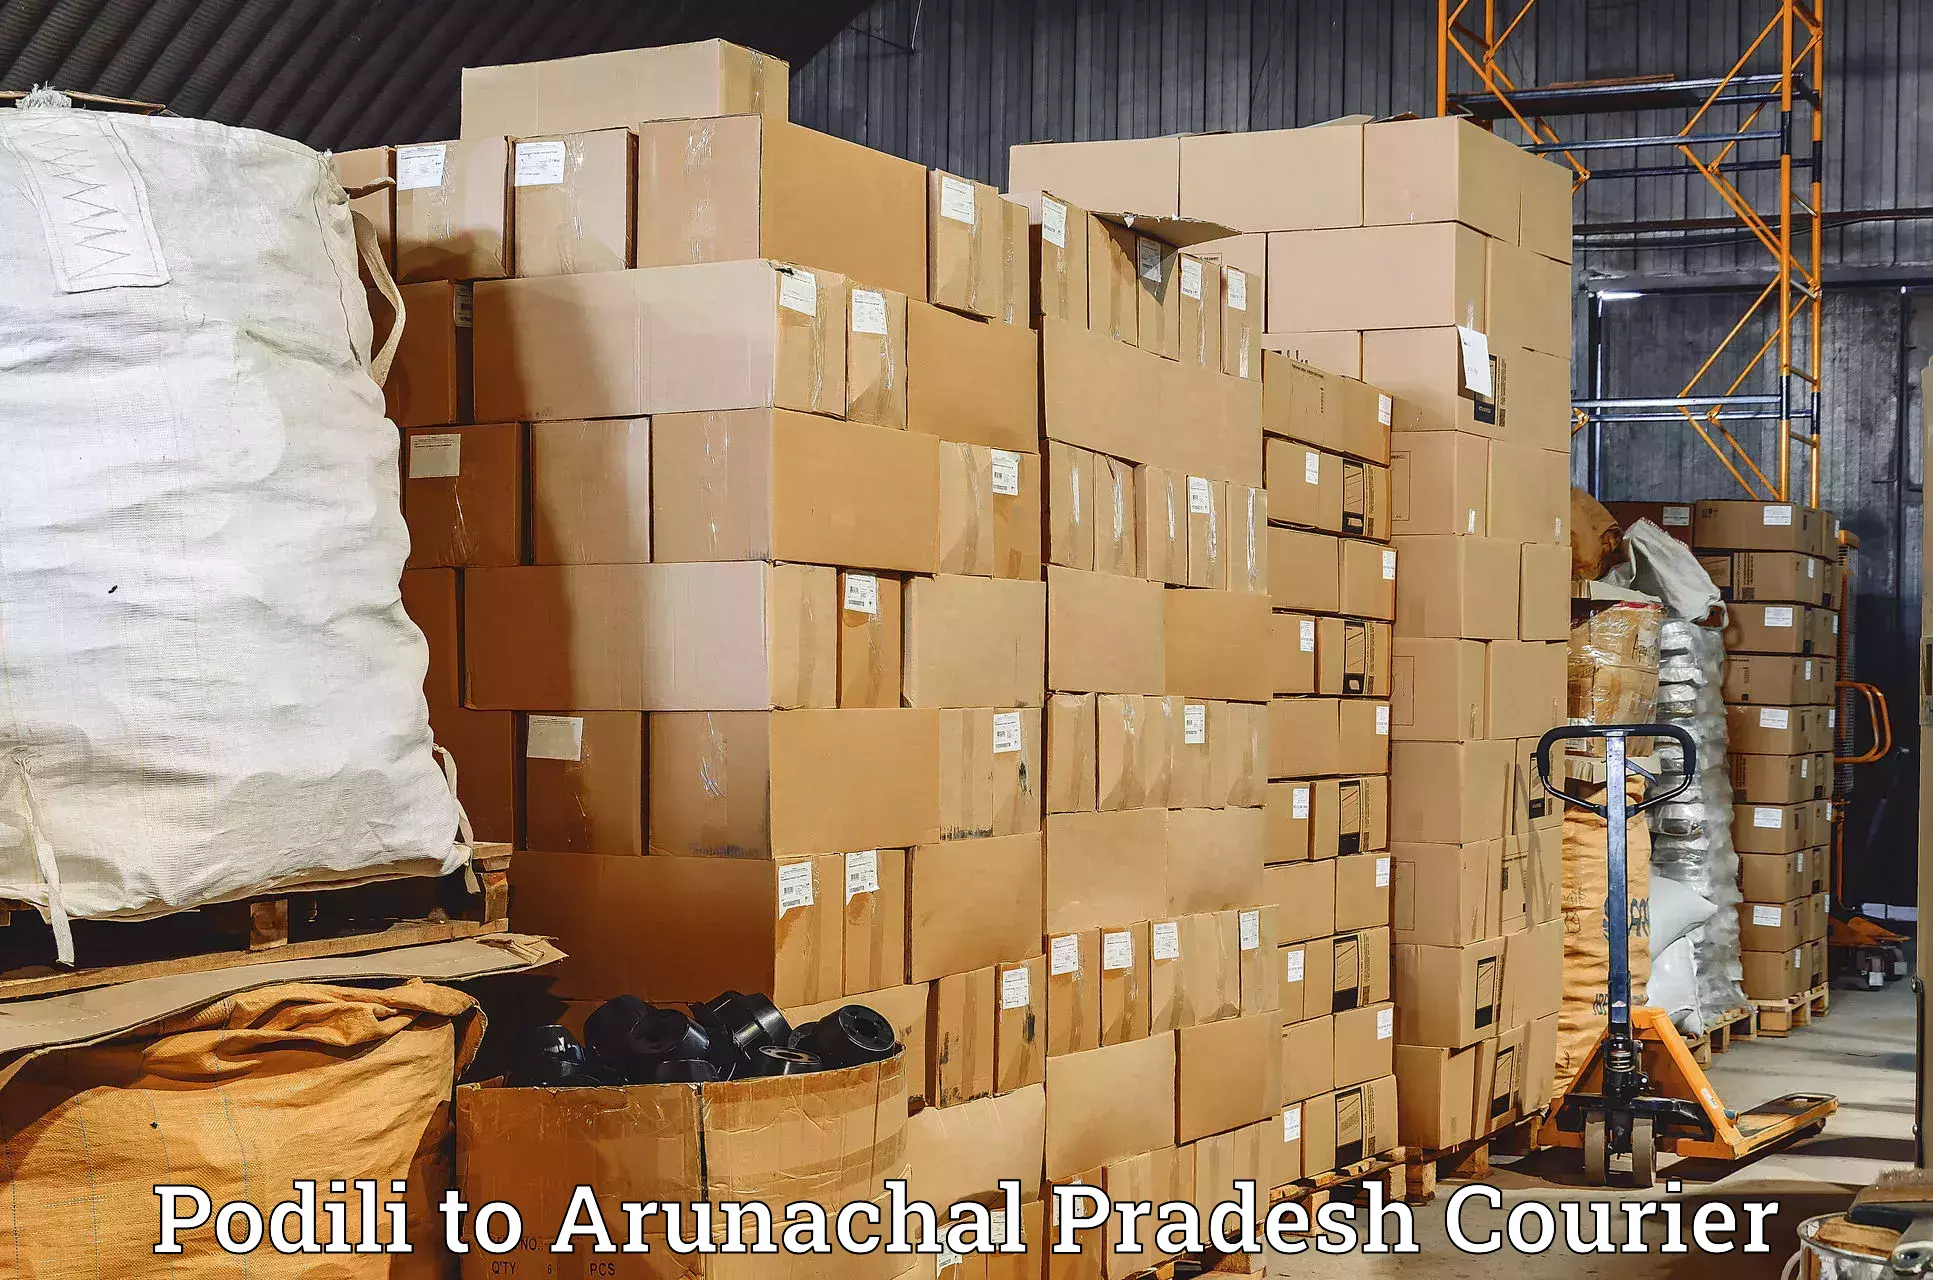 Next-generation courier services Podili to Arunachal Pradesh